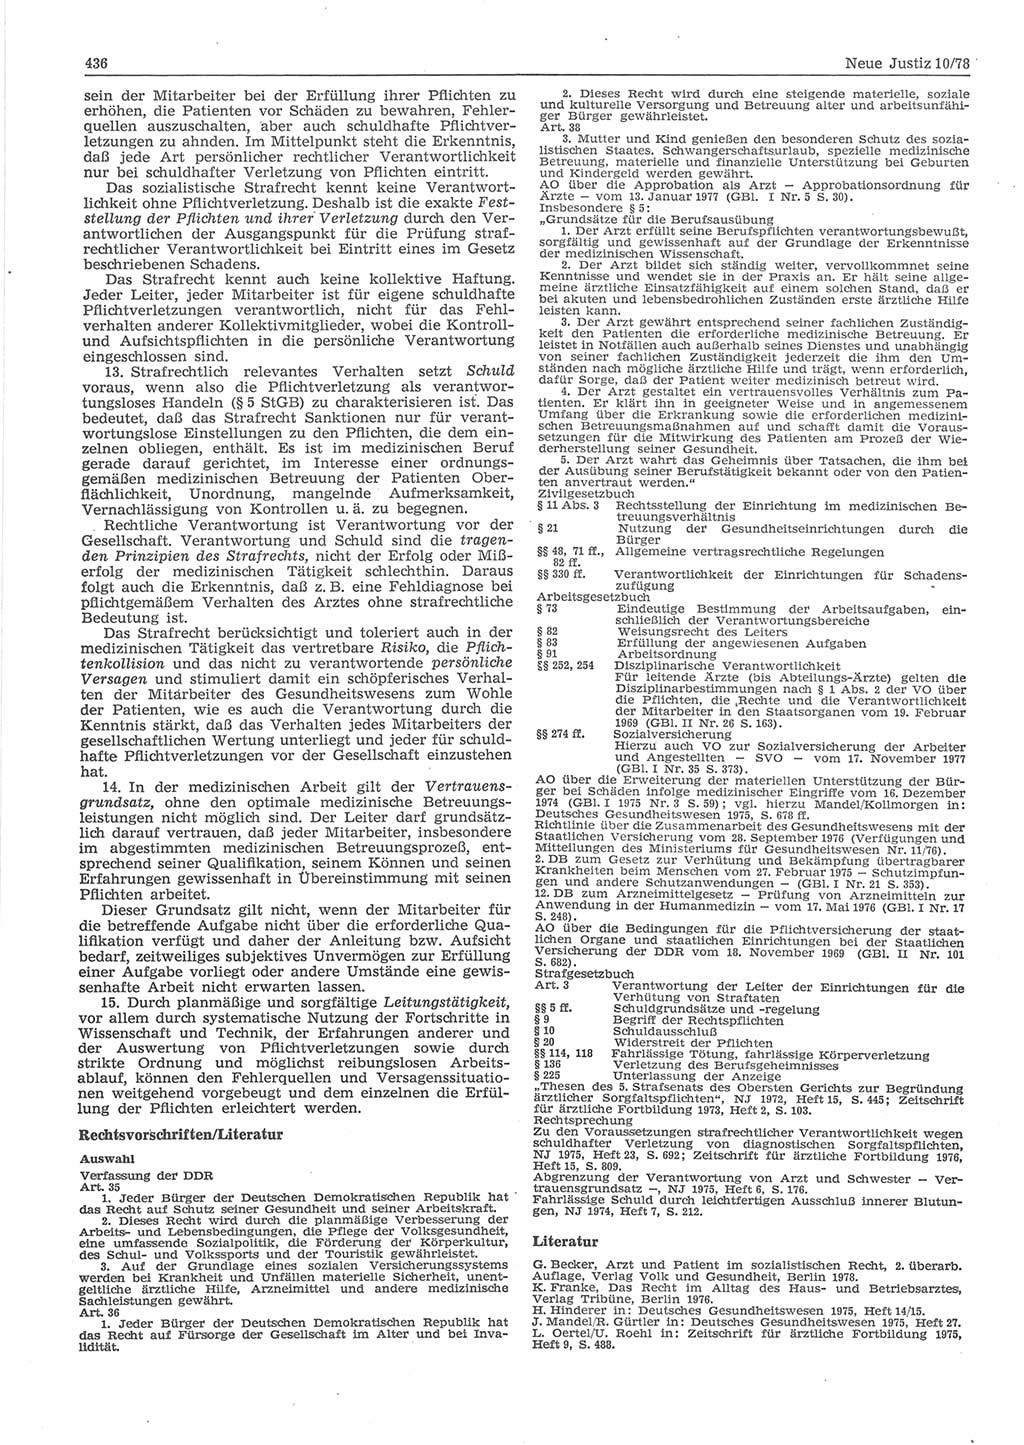 Neue Justiz (NJ), Zeitschrift für sozialistisches Recht und Gesetzlichkeit [Deutsche Demokratische Republik (DDR)], 32. Jahrgang 1978, Seite 436 (NJ DDR 1978, S. 436)